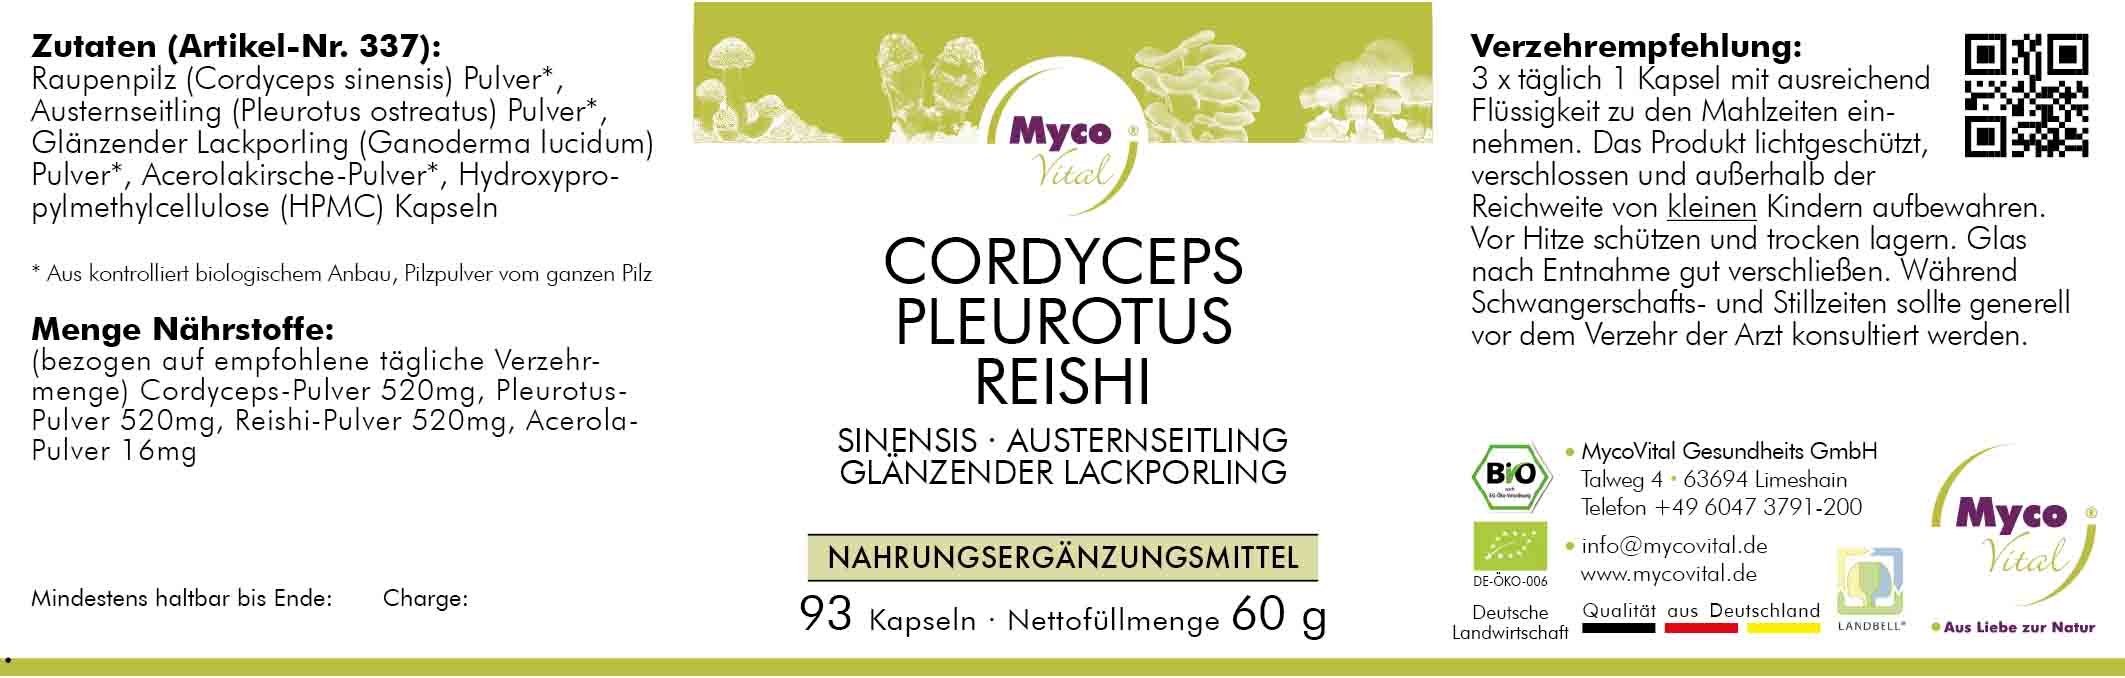 CORDYCEPS-PLEUROTUS-REISHI Bio-Pilzpulver-Kapseln (Mischung 337)